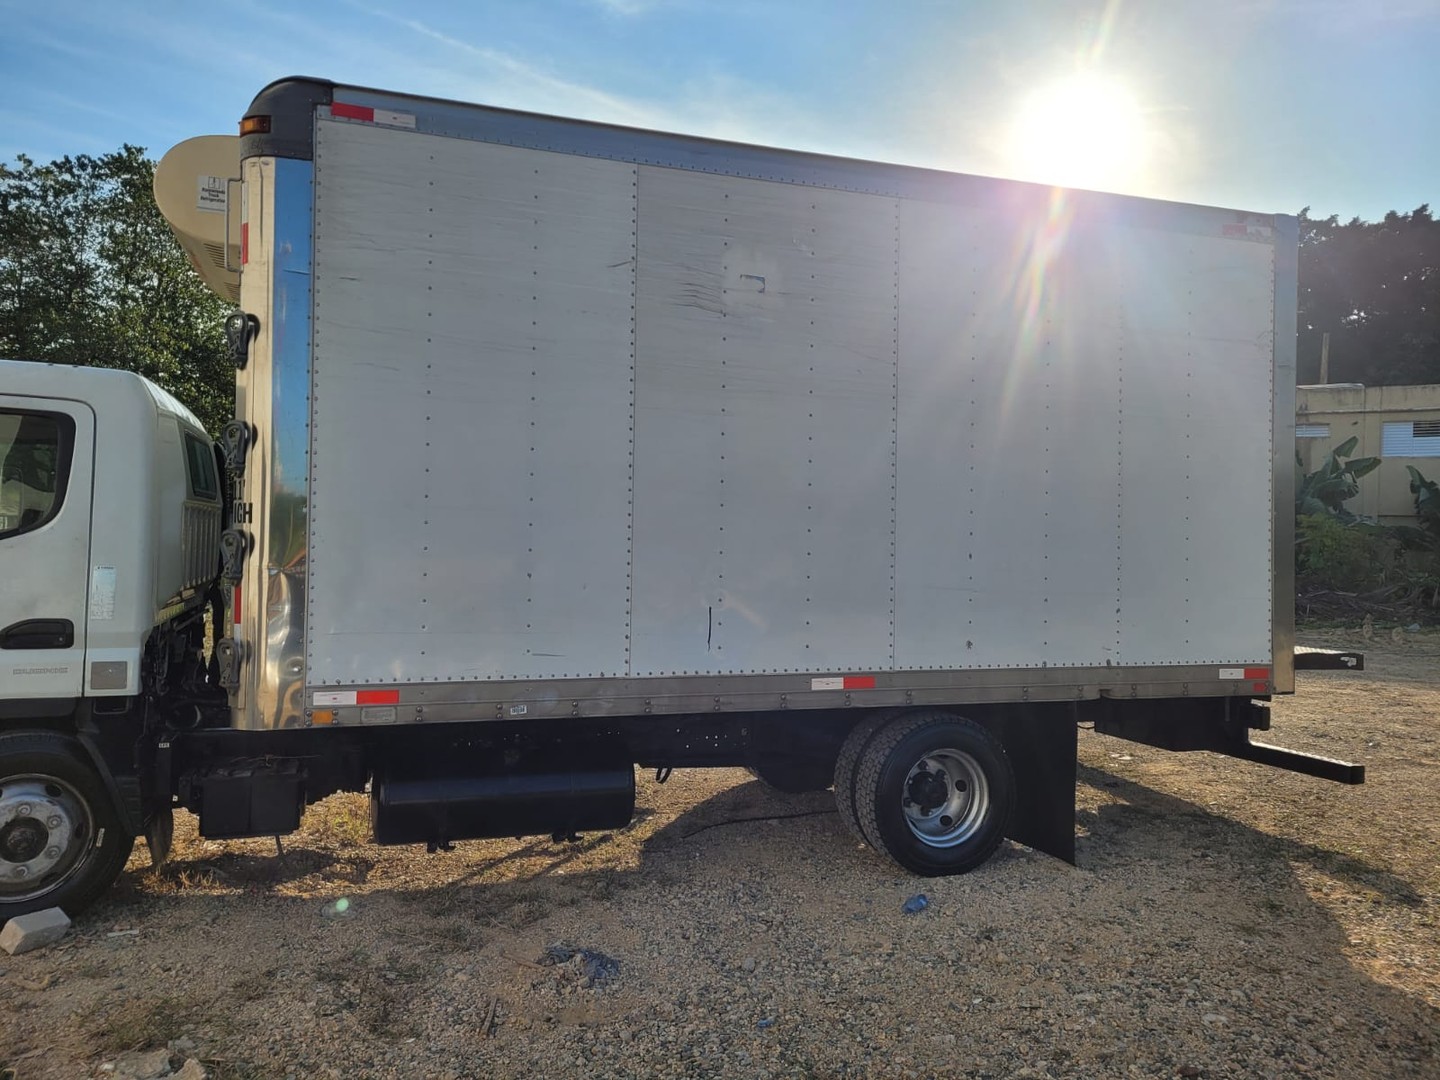 camiones y vehiculos pesados - Vendo traspaso de camion mitsubishi año 2014. $750,000 negociable. 3